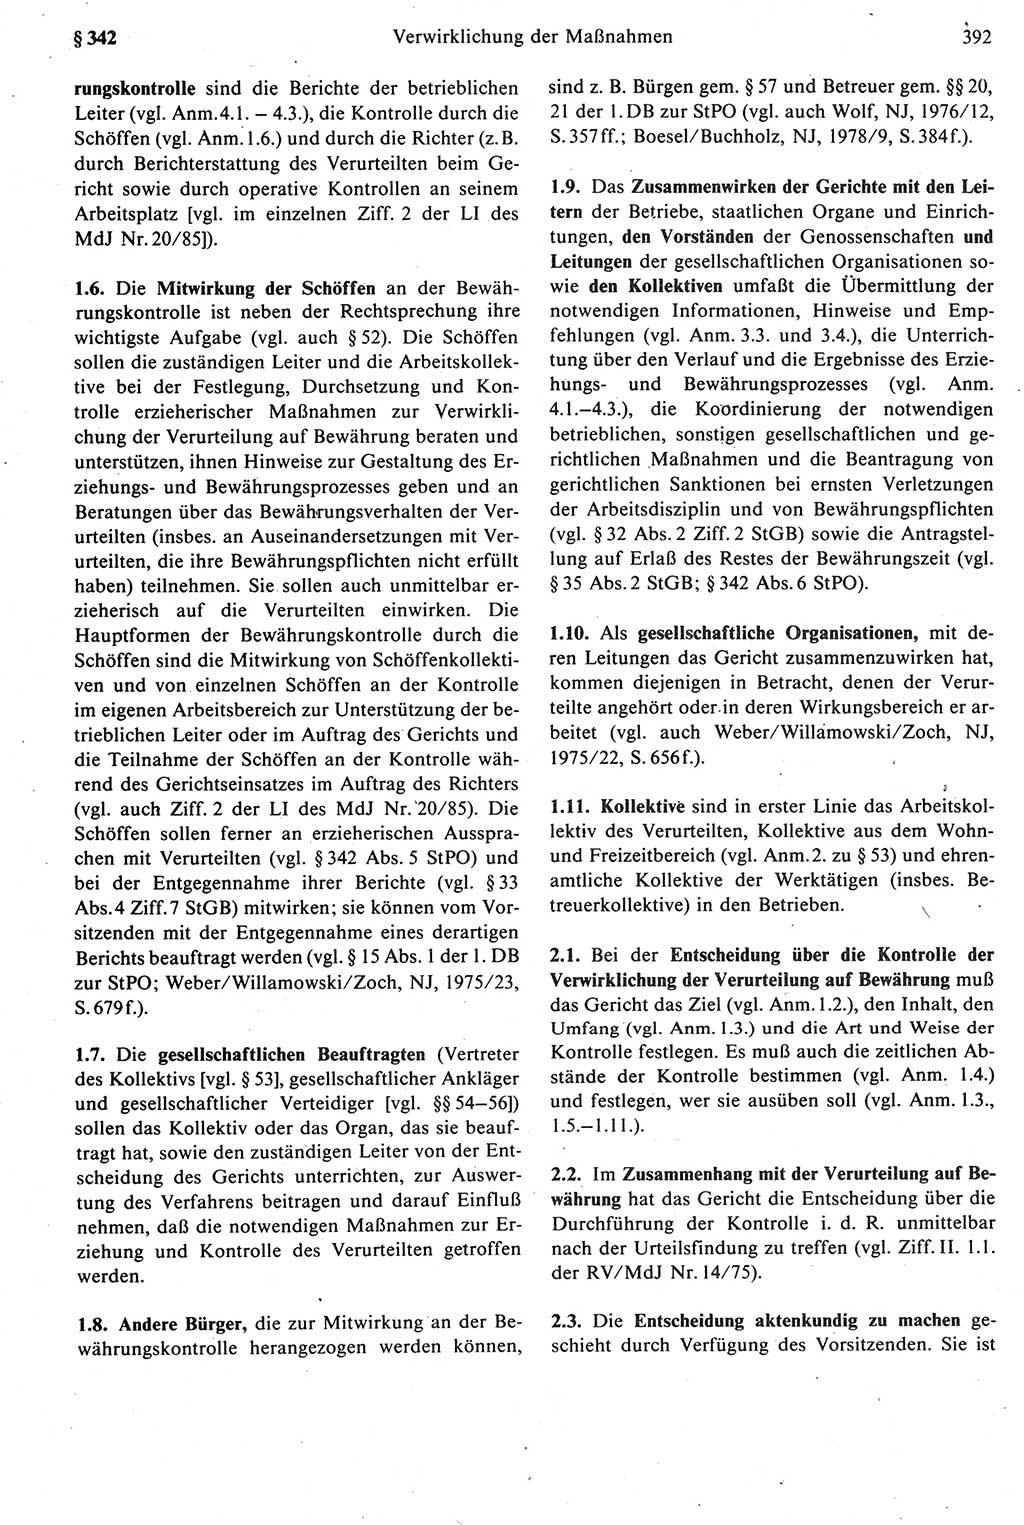 Strafprozeßrecht der DDR [Deutsche Demokratische Republik], Kommentar zur Strafprozeßordnung (StPO) 1987, Seite 392 (Strafprozeßr. DDR Komm. StPO 1987, S. 392)